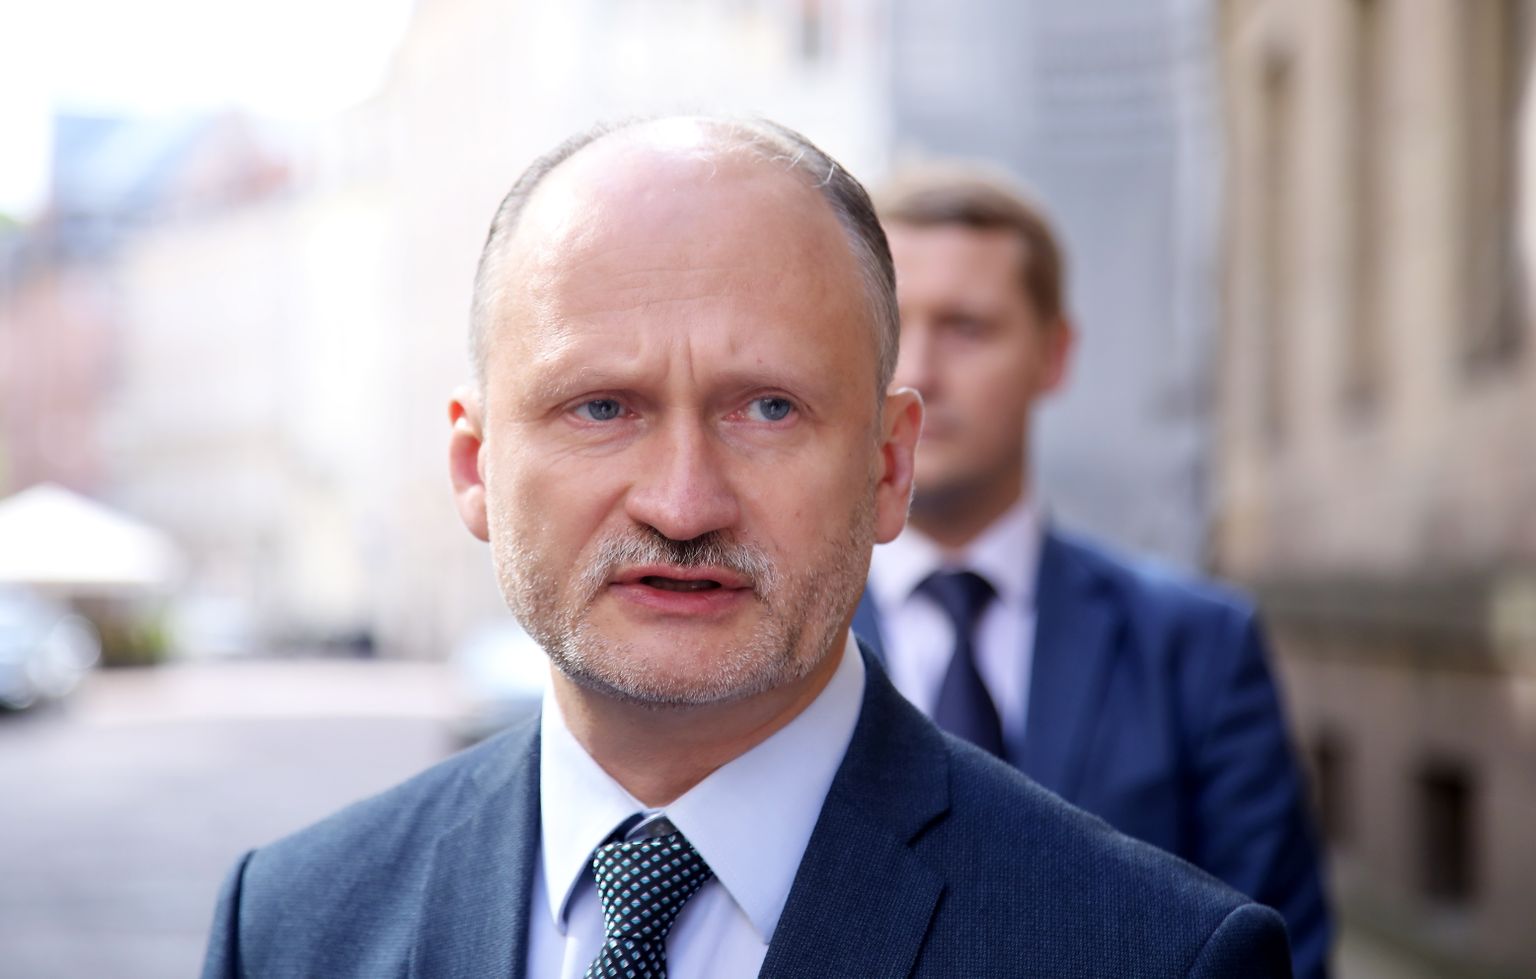 Partijas "Latvijas Krievu savienība" līdzpriekšsēdētājs Miroslavs Mitrofanovs dodas iesniegt partijas deputātu kandidātu sarakstu un priekšvēlēšanu programmu 14. Saeimas vēlēšanām Centrālajā vēlēšanu komisijā.